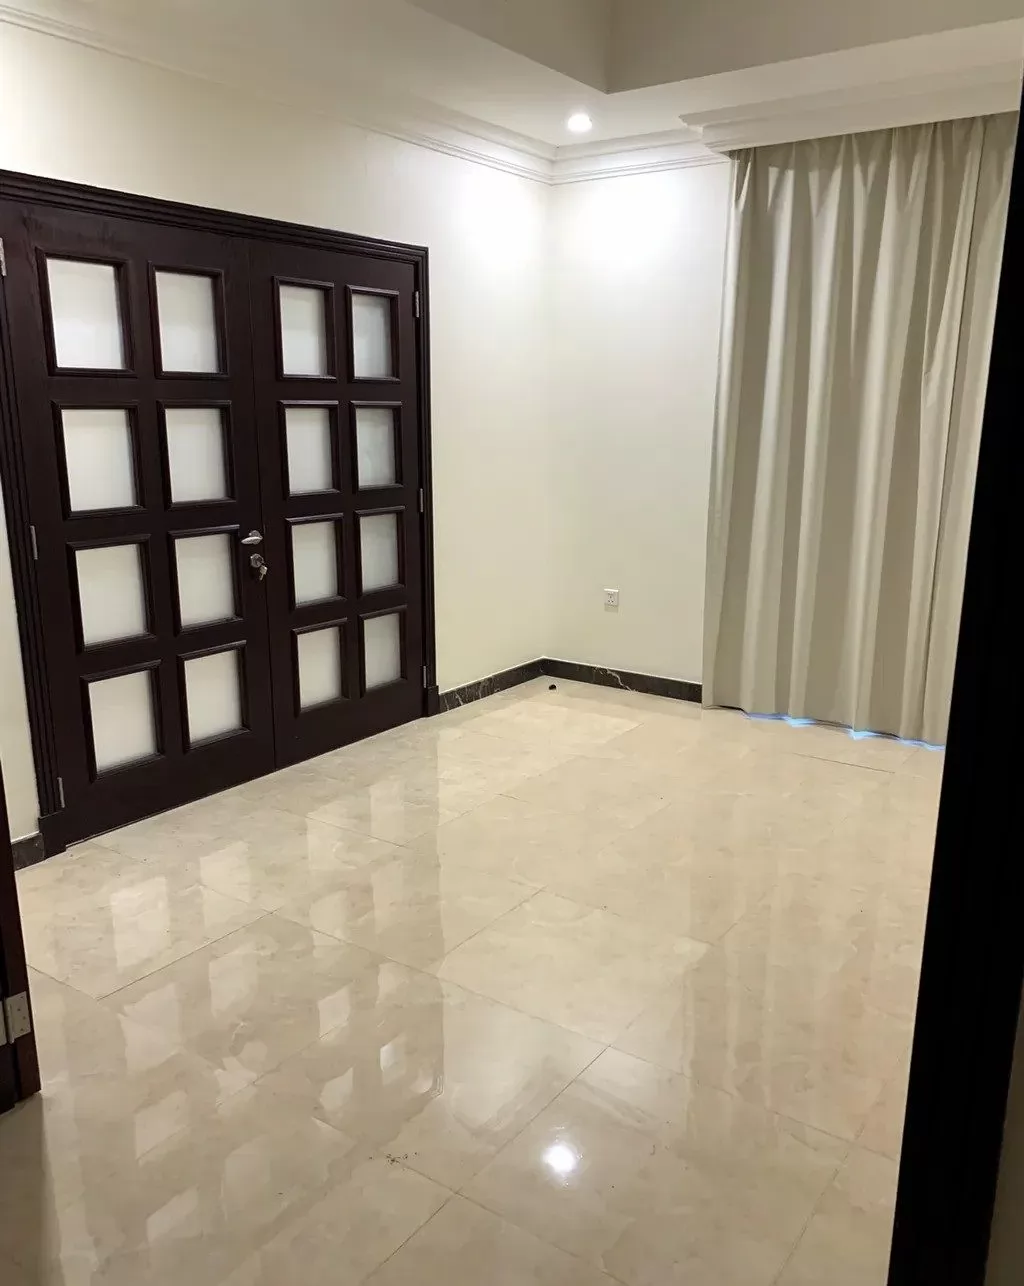 سكني عقار جاهز 2 + غرفة خادمة نصف مفروش شقة  للإيجار في الرياض #23533 - 1  صورة 